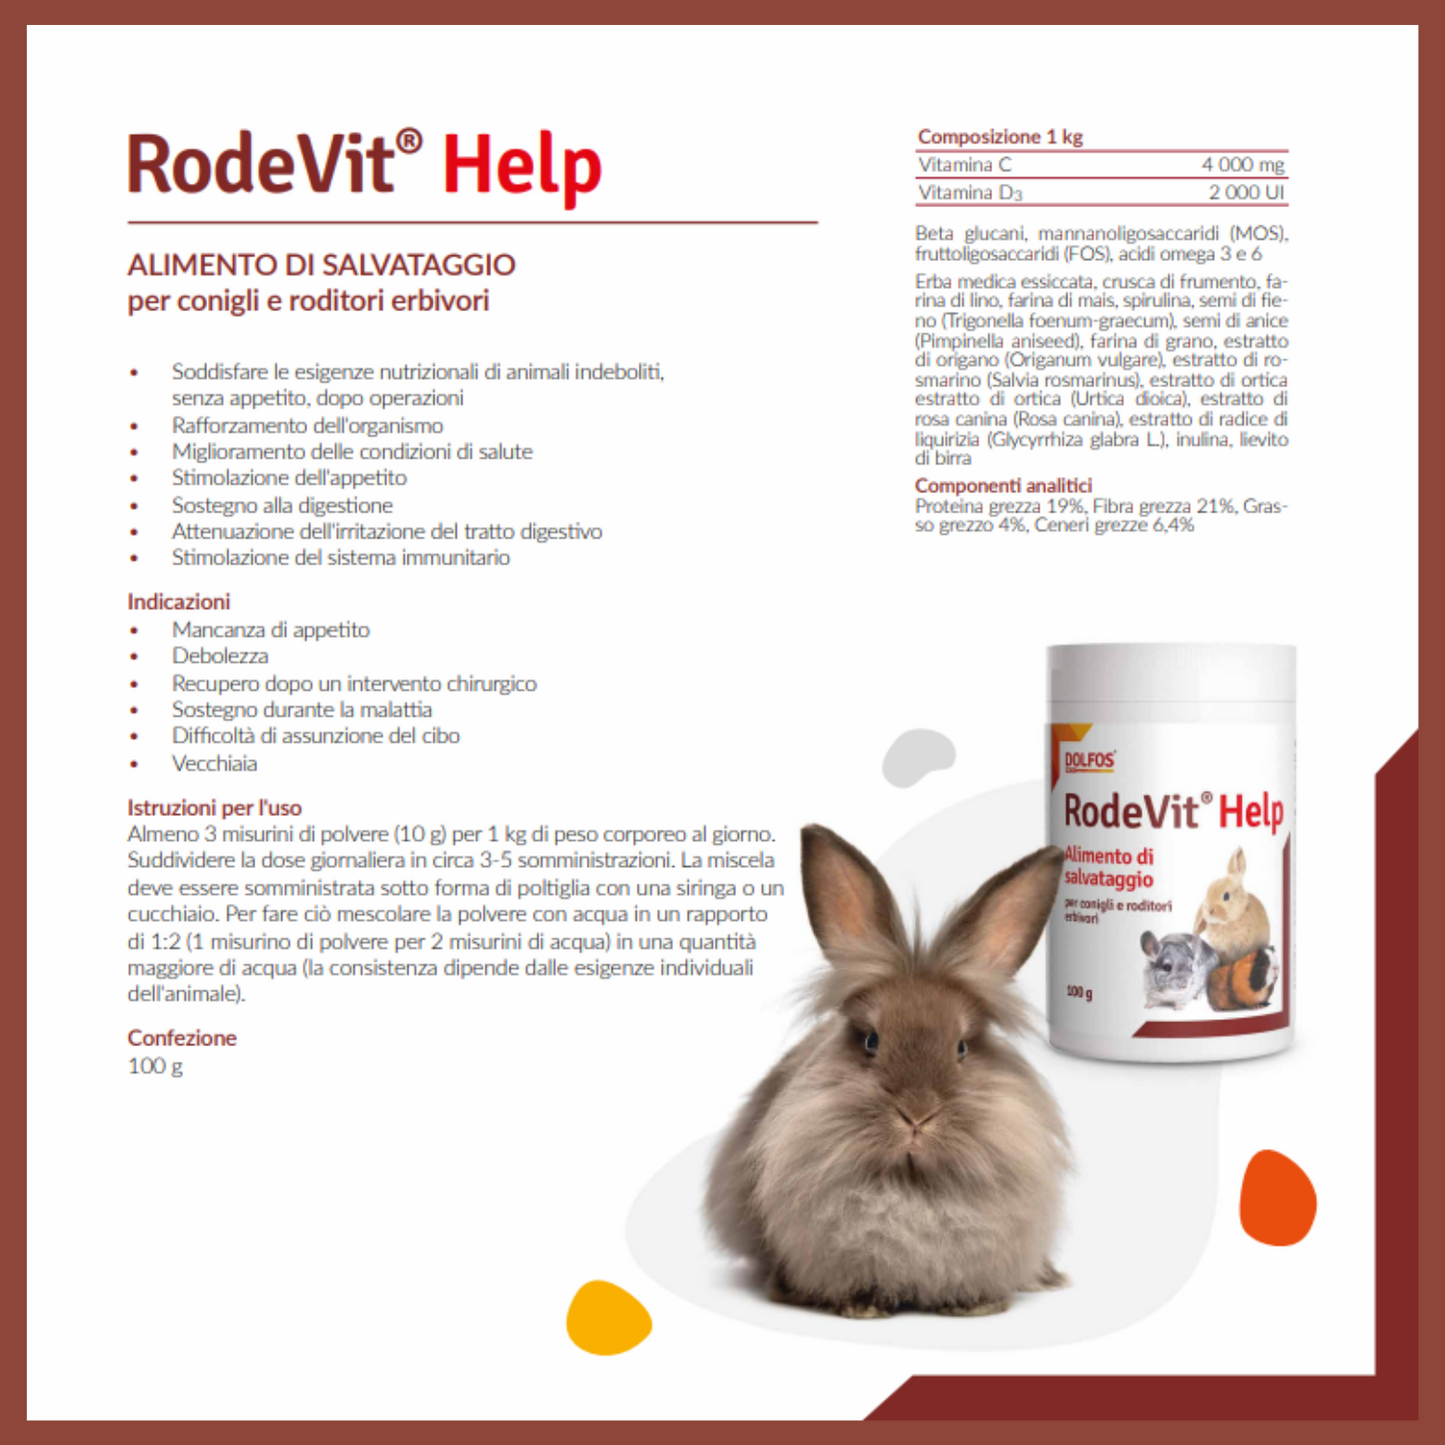 RodeVit Help " .. alimento di soccorso nei periodi di inappetenza..per erbivori "